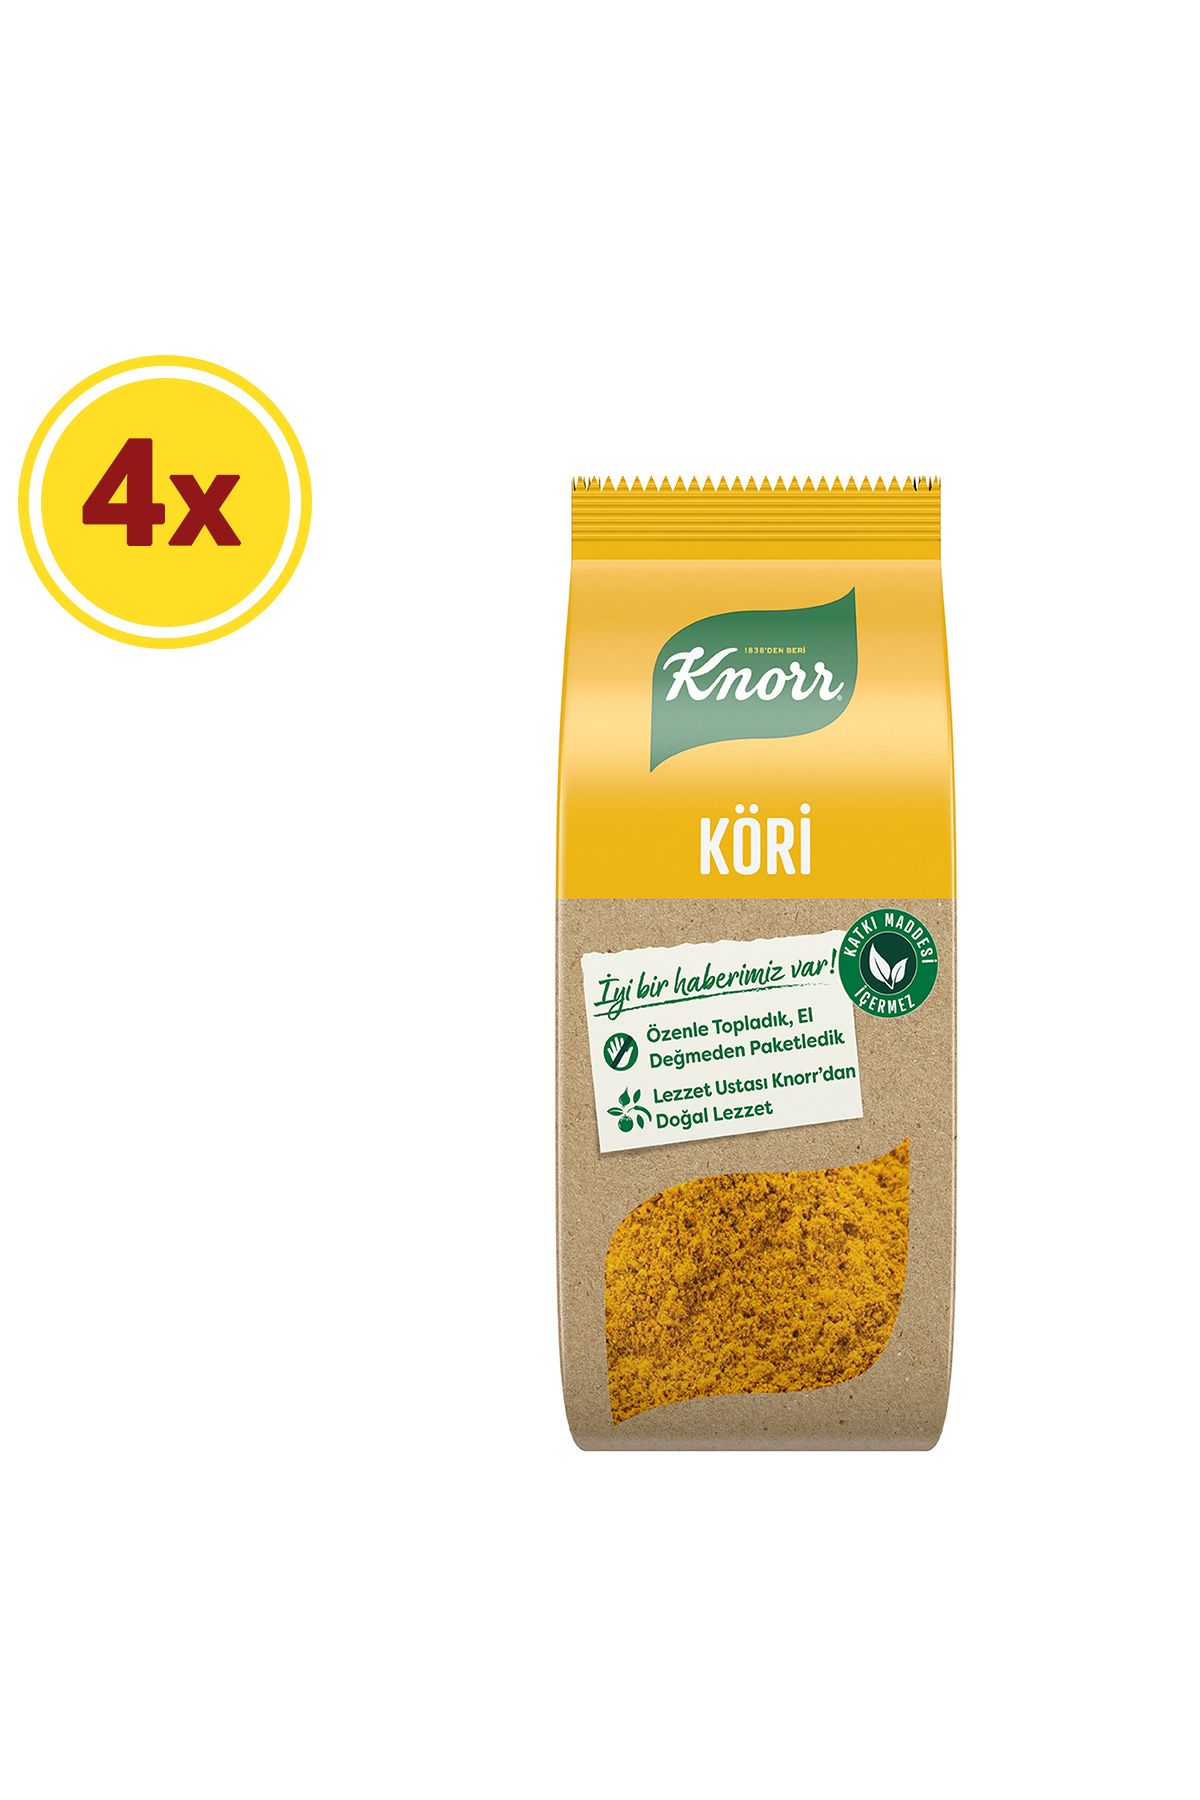 Knorr Köri 65g X4 Adet